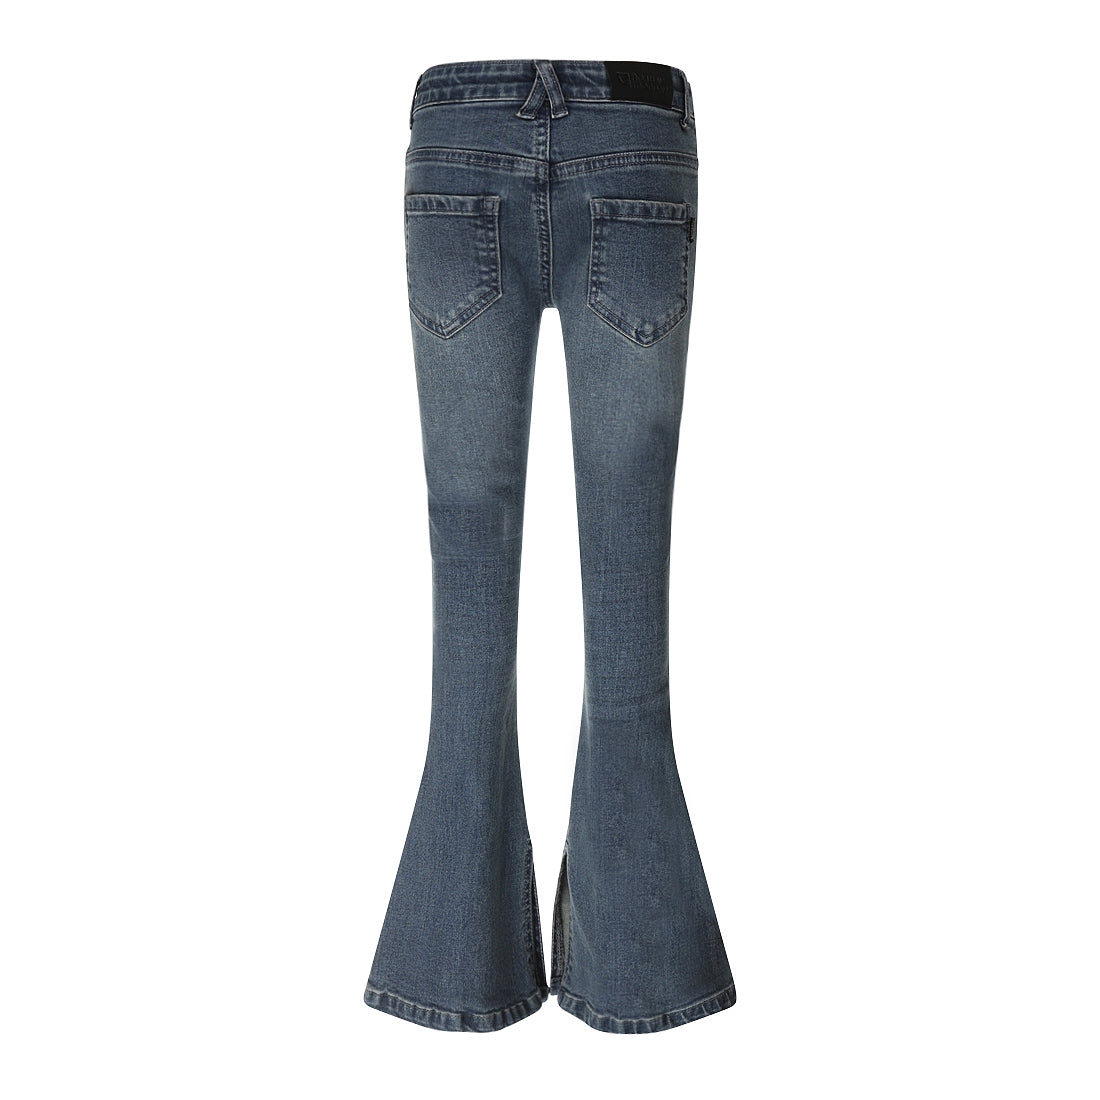 Meisjes Jeans flared van No Way Monday in de kleur Blue jeans in maat 164.